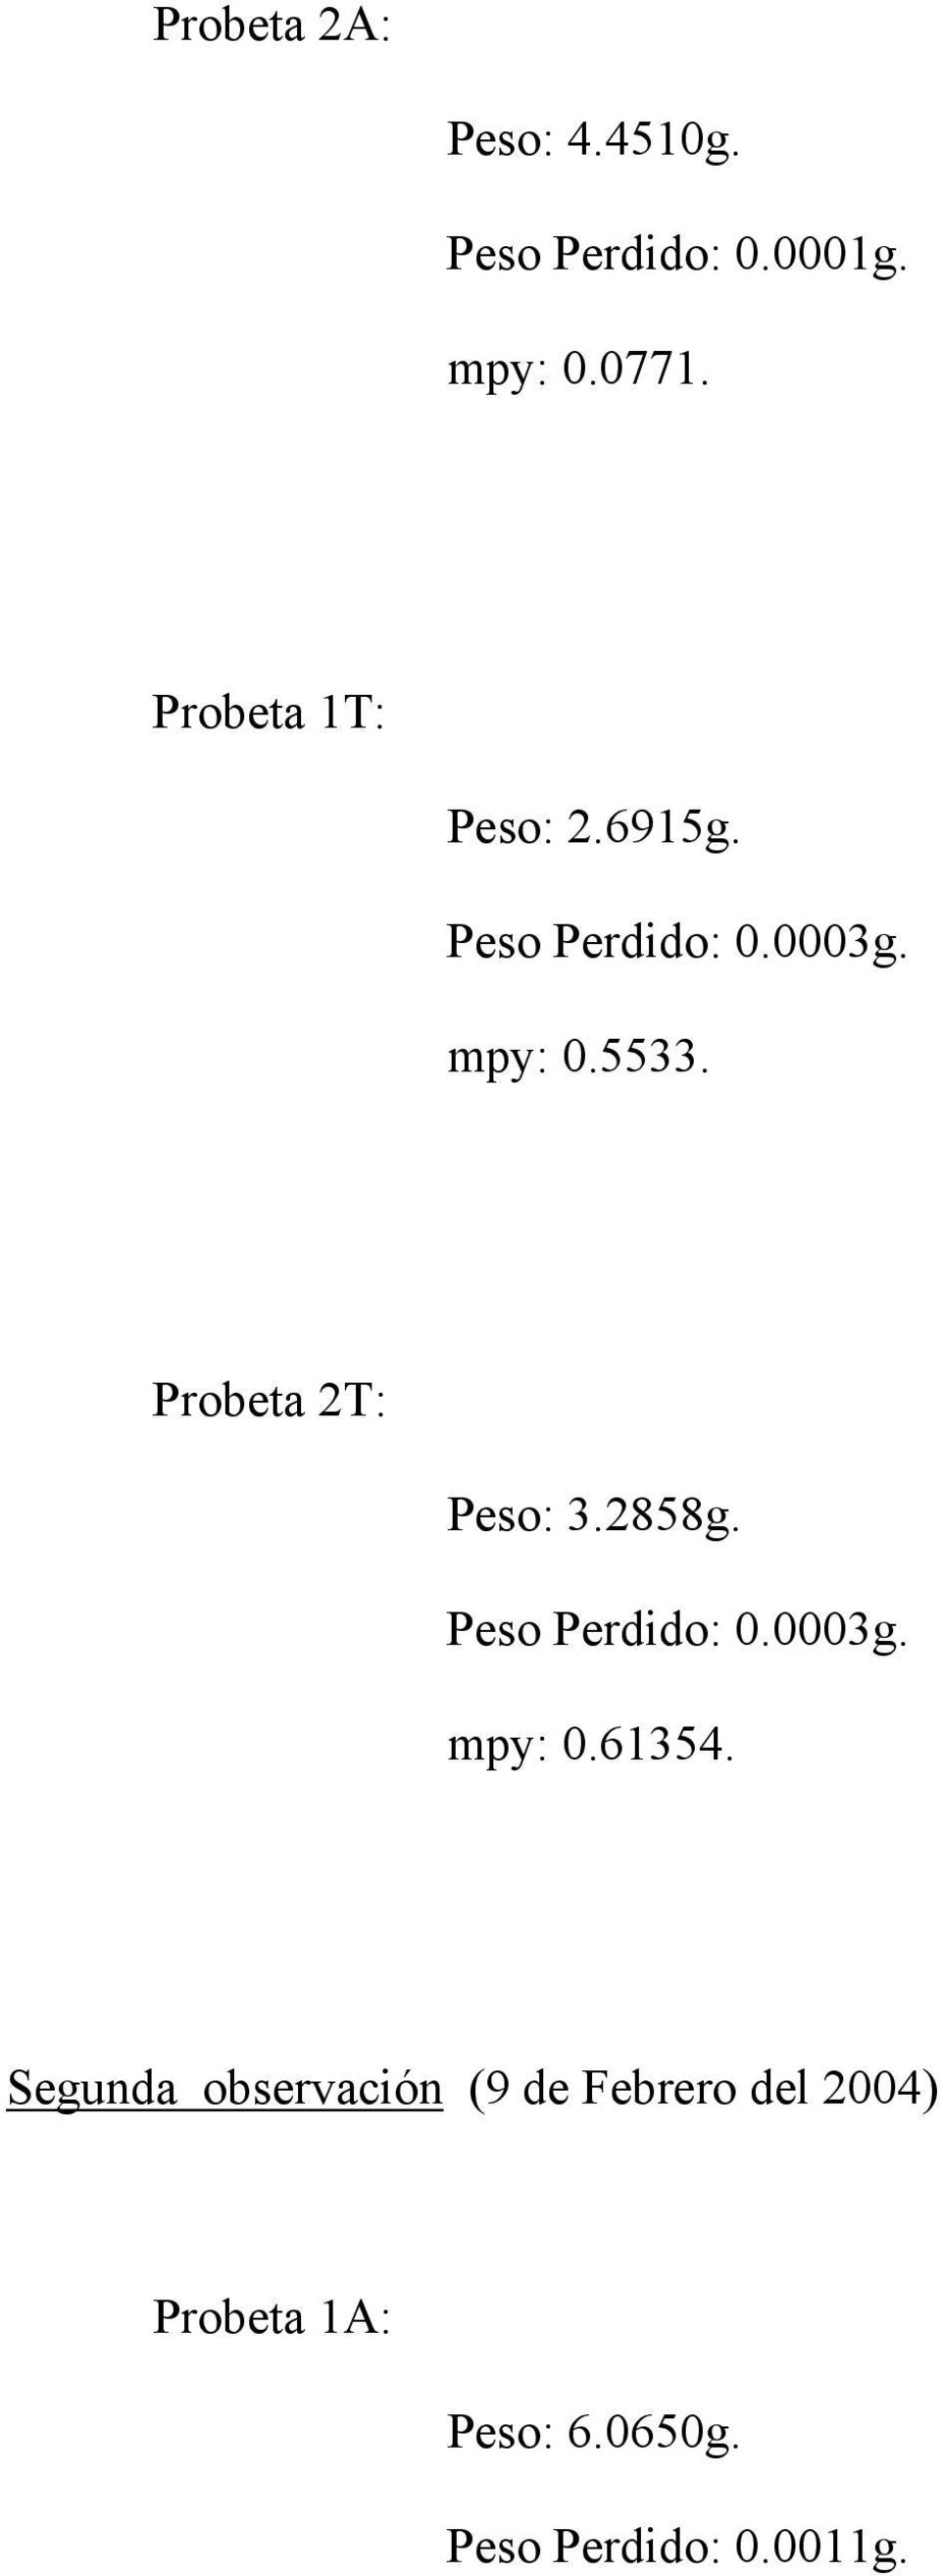 Probeta 2T: Peso: 3.2858g. Peso Perdido: 0.0003g. mpy: 0.61354.